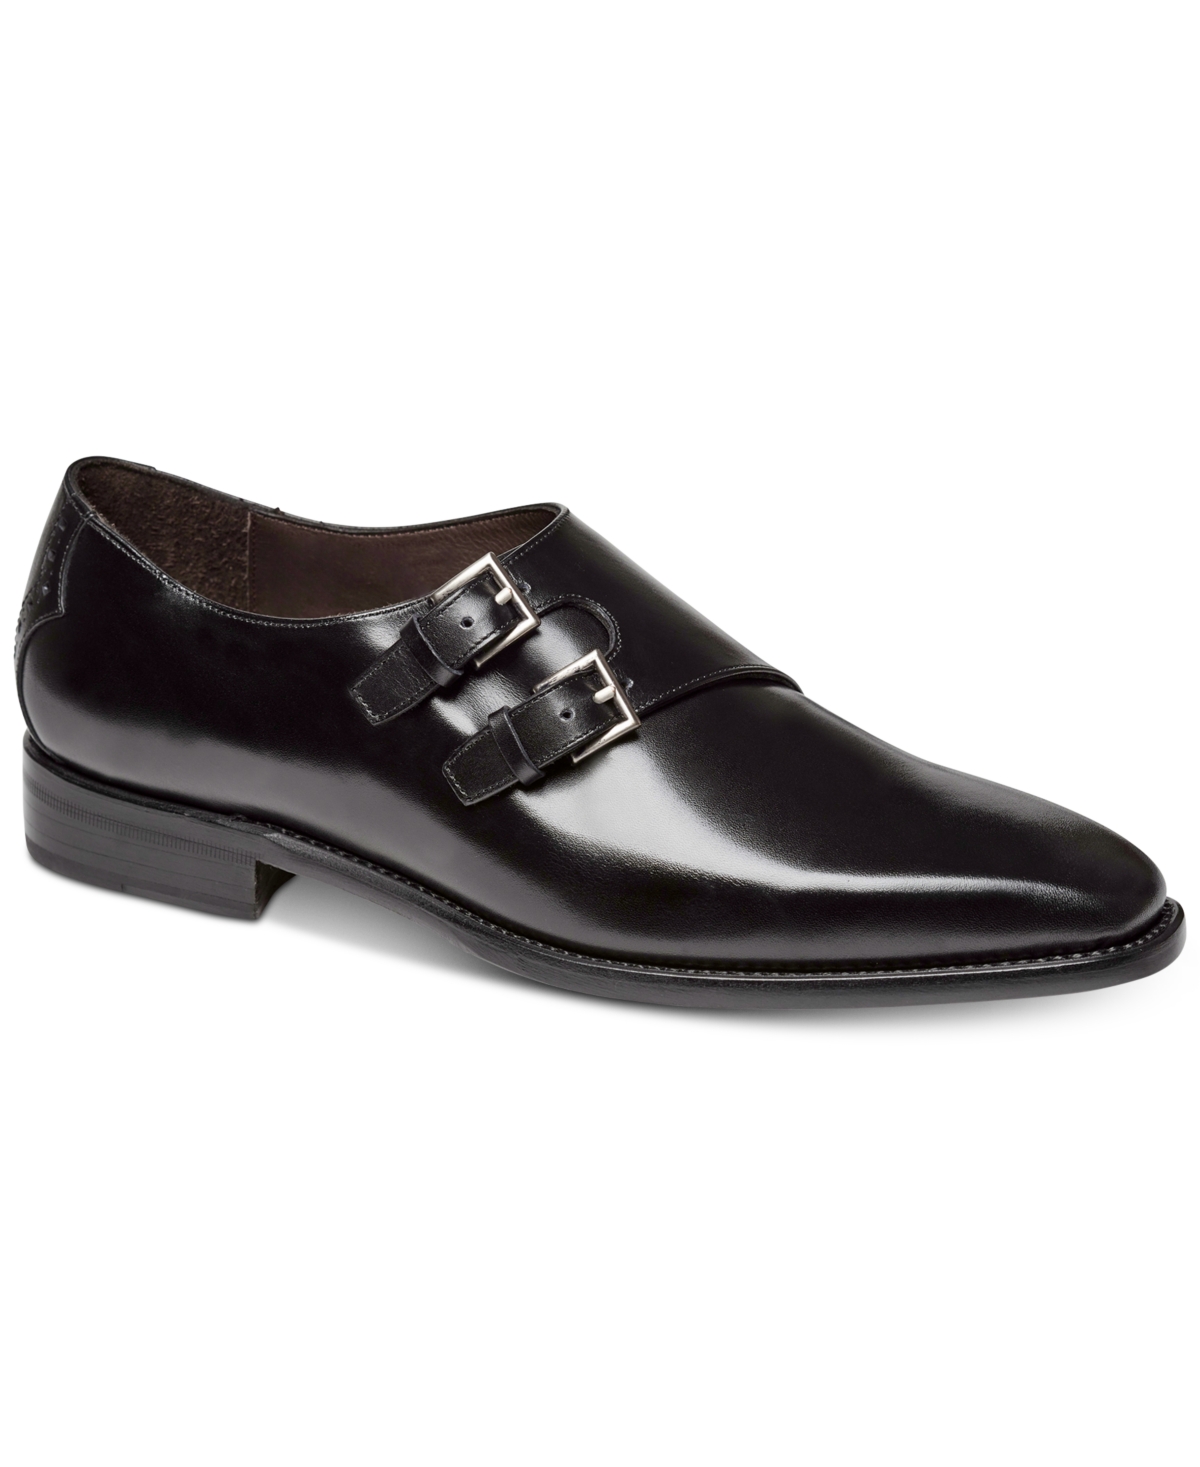 Power Print Men's Oxford Shoe - Black